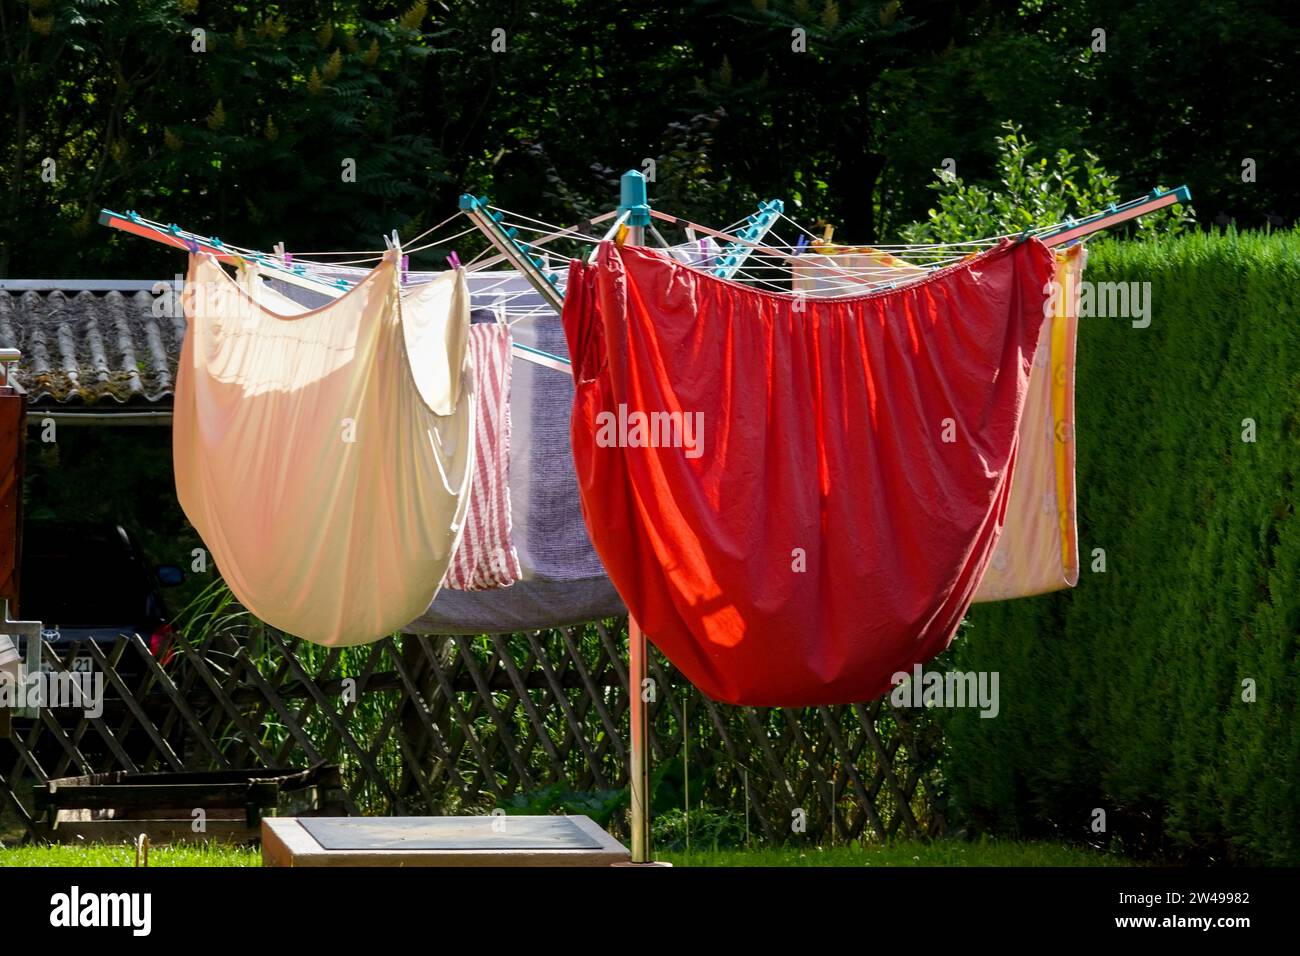 Ligne de lavage d'air, coloré, blanchisserie sur la ligne rotative de vêtements, lavage de vêtements propres, ligne de linge de séchage dans le jardin Banque D'Images